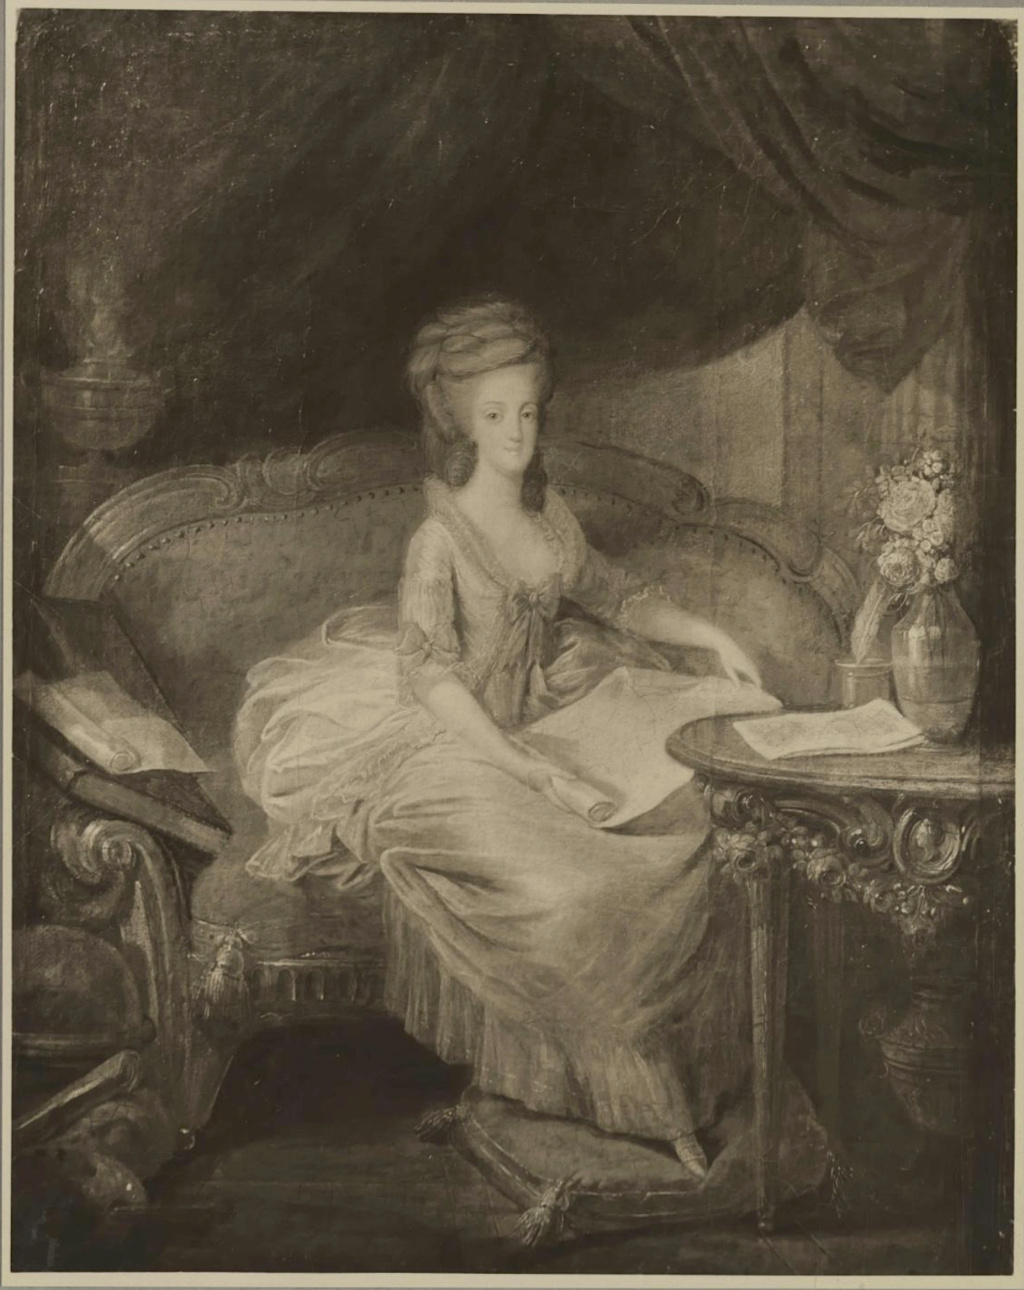 Portraits de Marie-Antoinette et de la famille royale par Charles Le Clercq ou Leclerq - Page 4 Capt3835